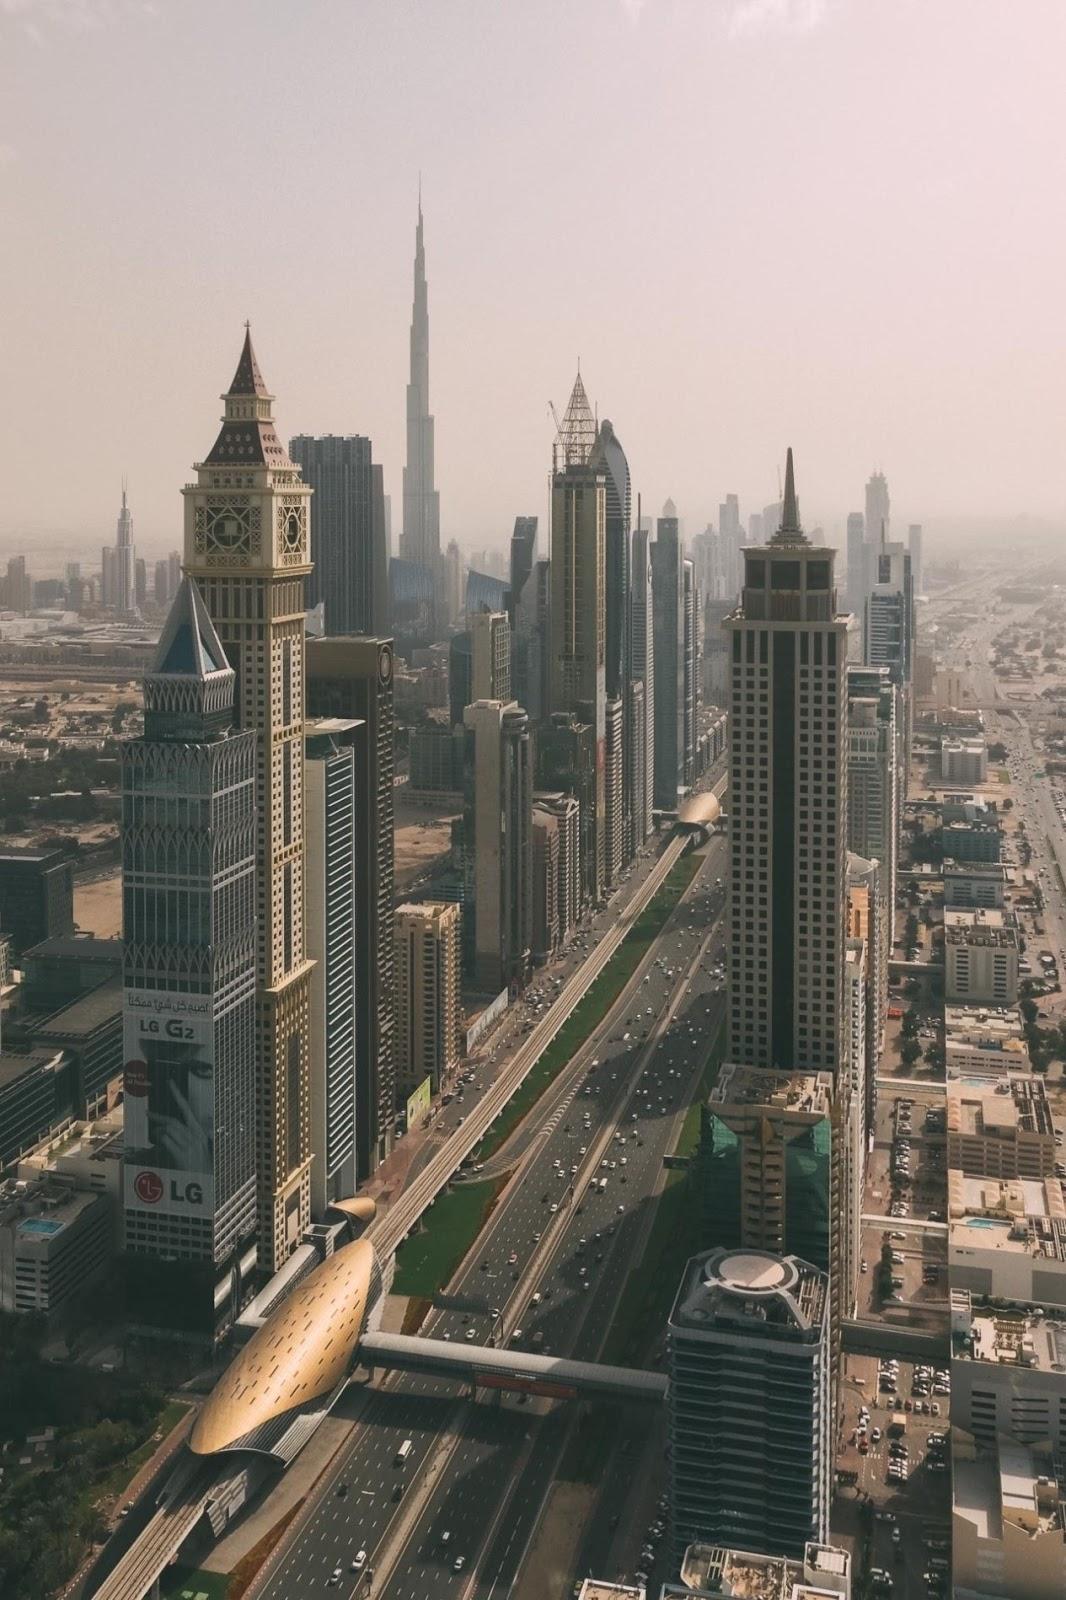 Dubai skyscraper highway. Mobile Wallpaper Mobile Walls